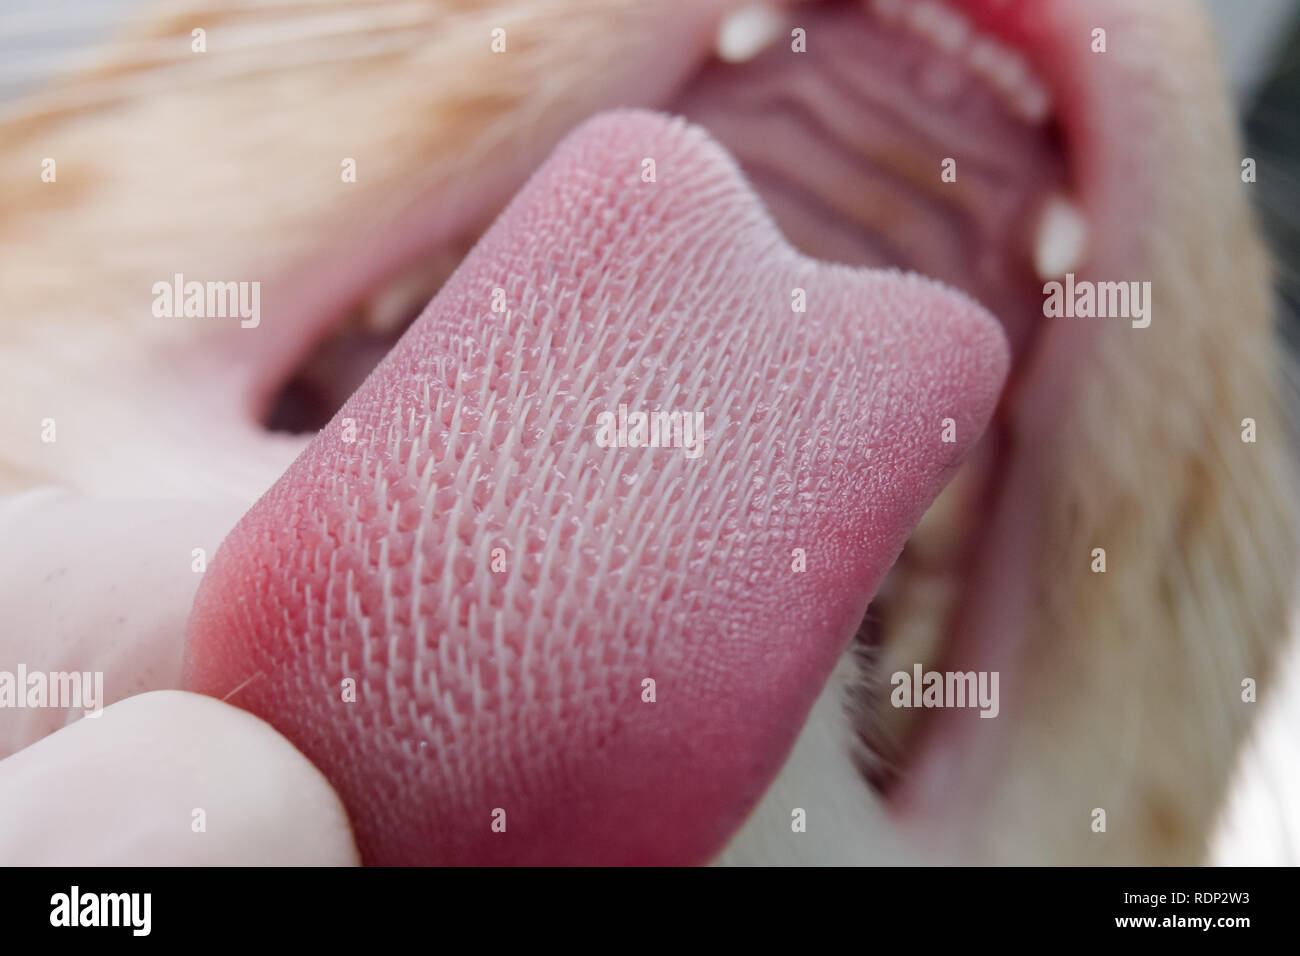 Katze Zunge mit Verhornten Papillen Stockfotografie - Alamy